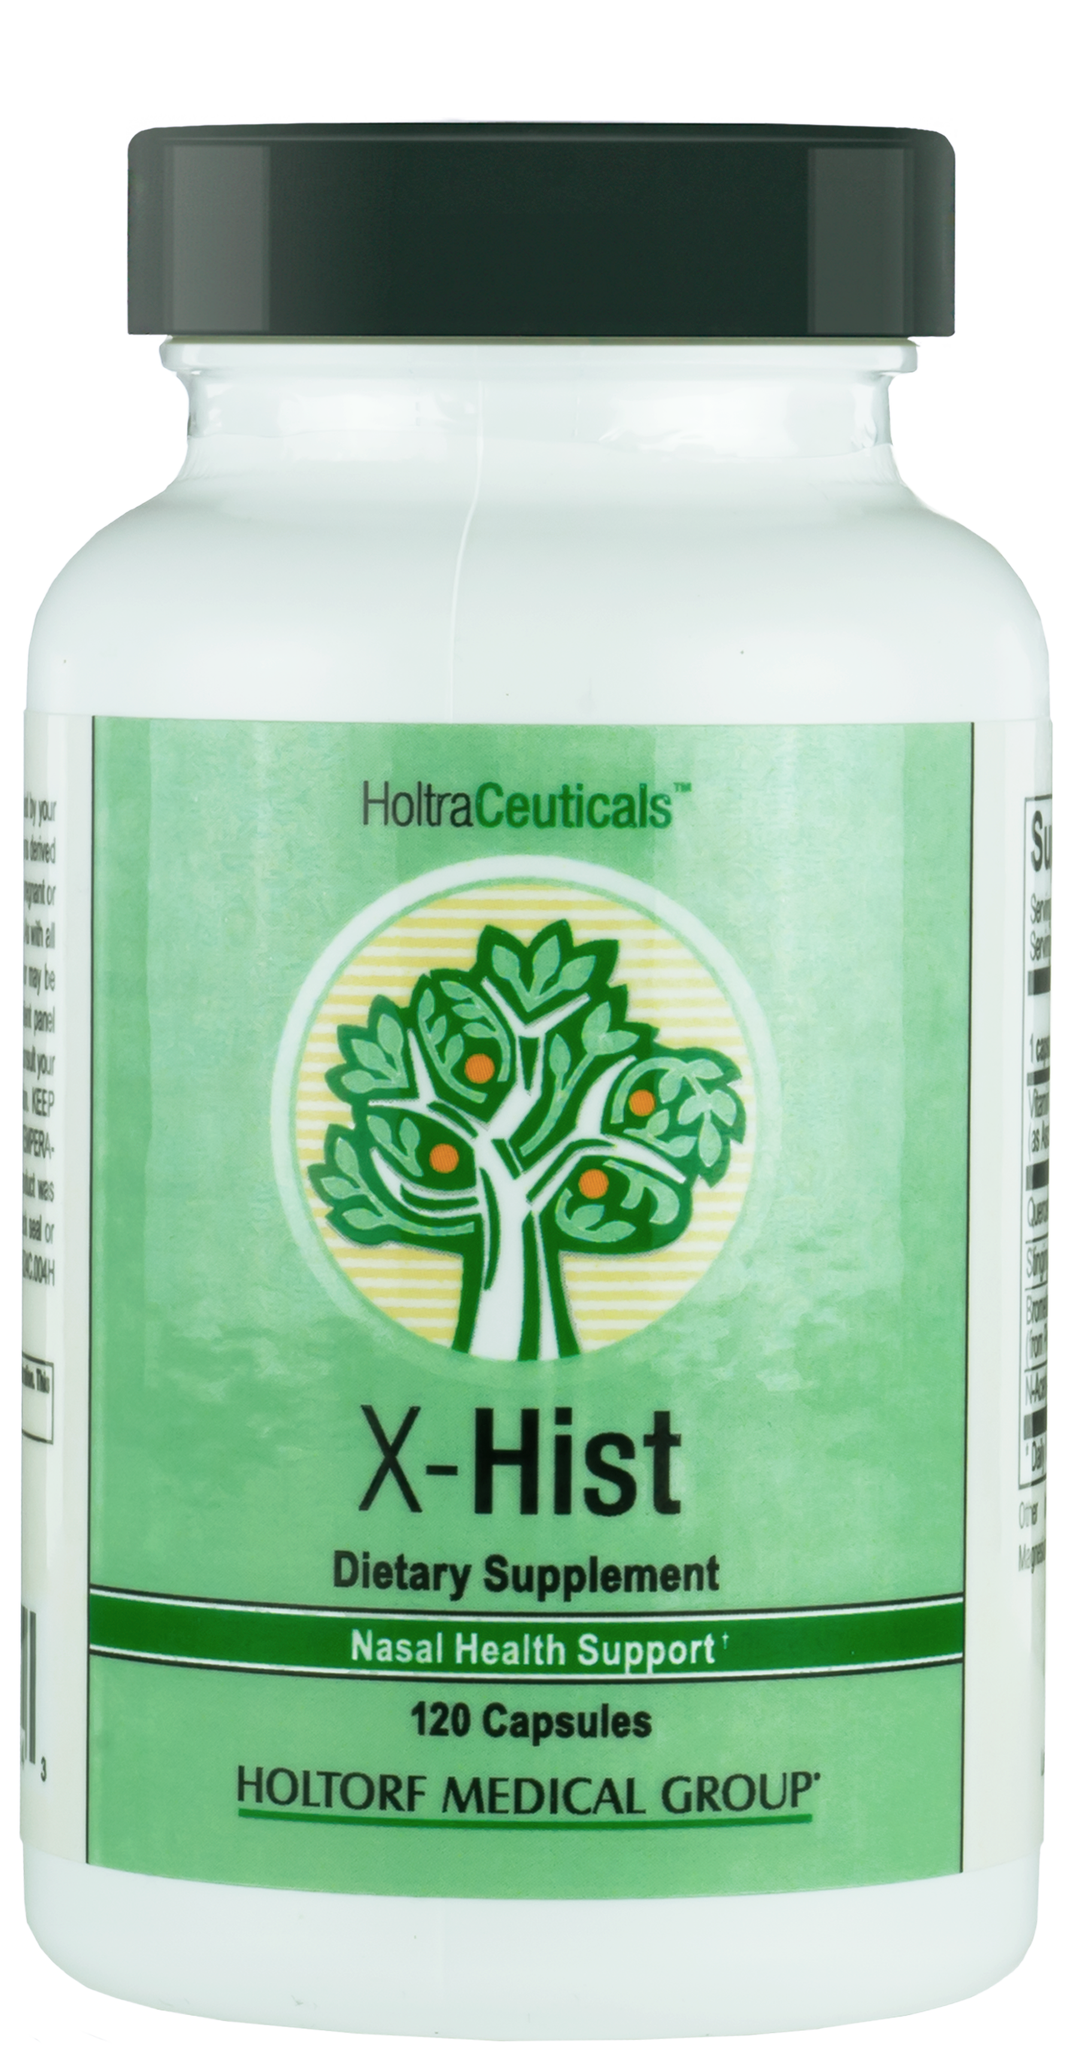 X-Hist